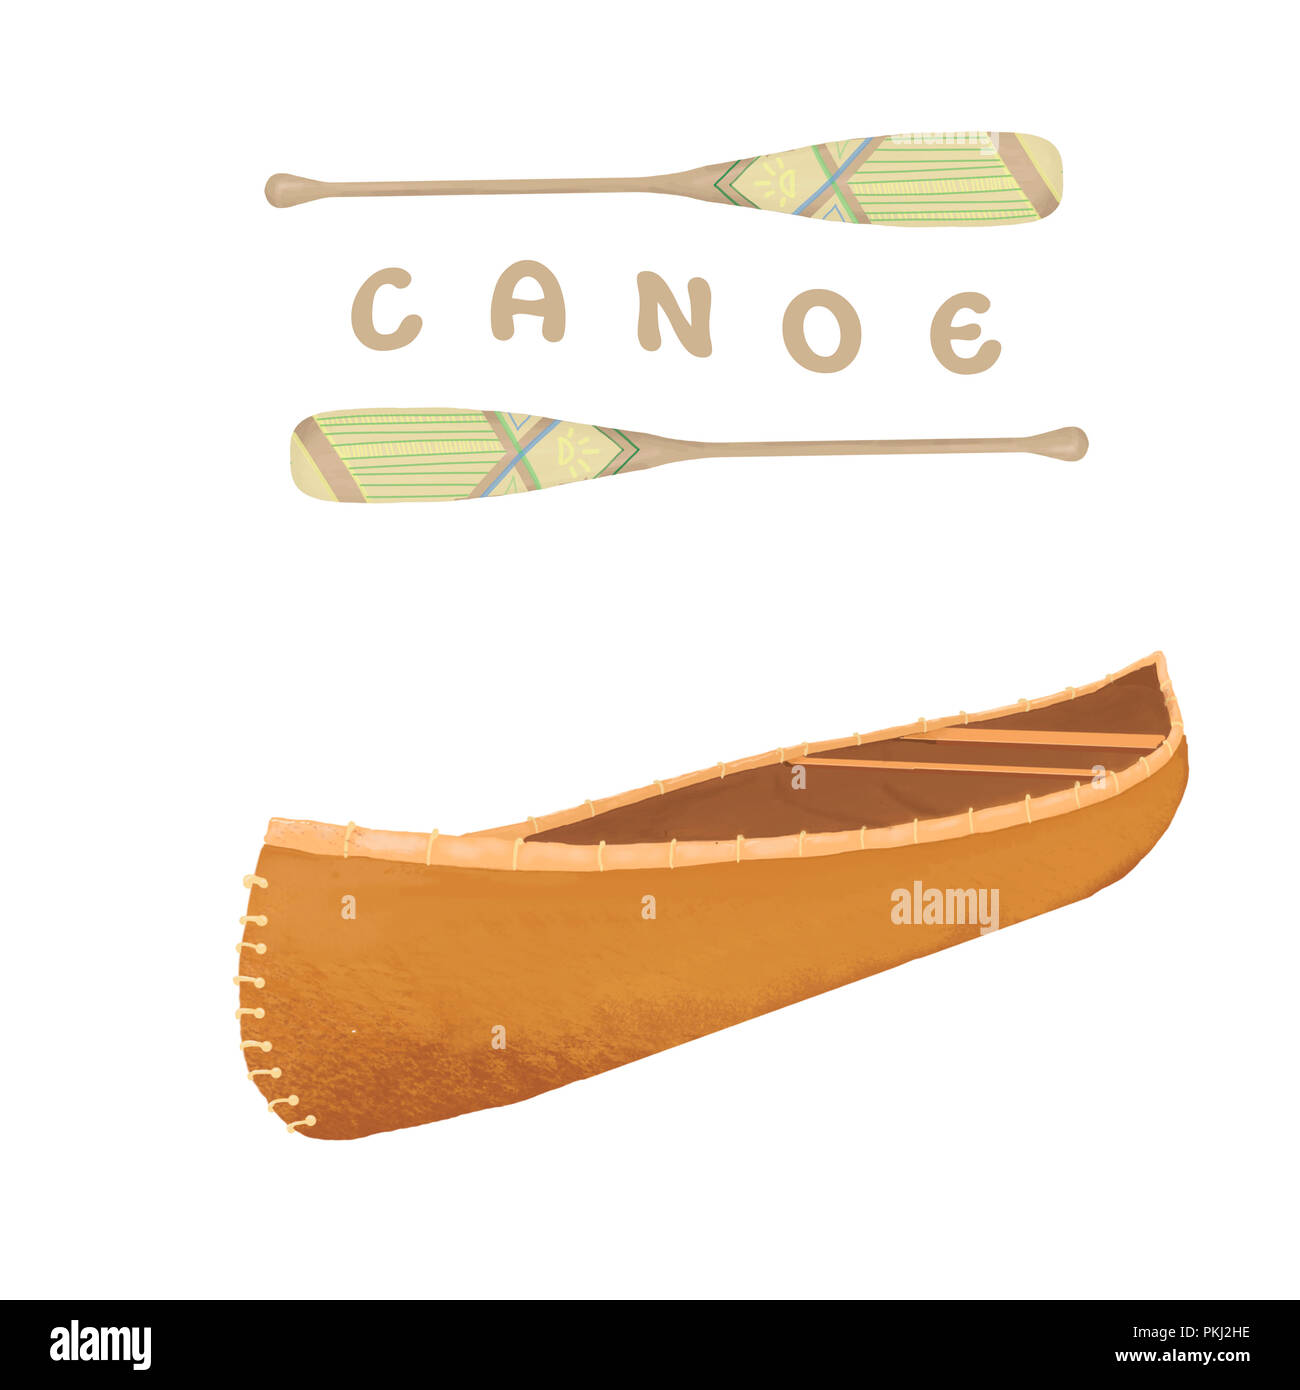 Kanu digital clip art vintage Yacht in Isometrie Stil. Isometrische Kayak-Symbol. Mit dem Kanu paddeln auf weißem Hintergrund. Stockfoto